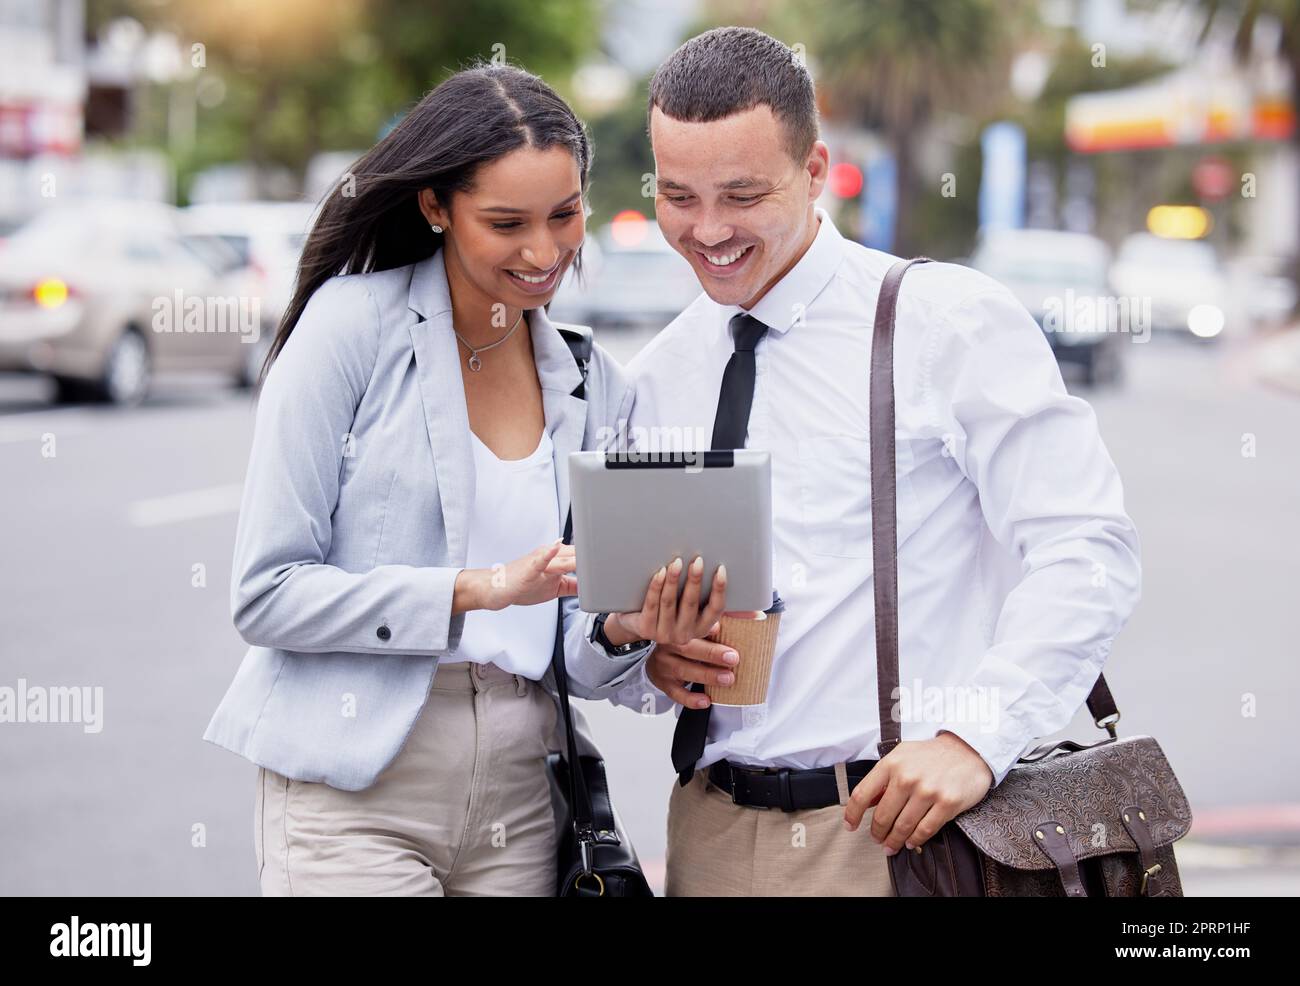 5g tablettes internet et médias sociaux en streaming en direct de regarder un couple après le travail dans une ville. Des amis ou des partenaires de travail heureux avec un sourire regardant un souvenir, le Web ou le contenu de blog sur une rue urbaine Banque D'Images